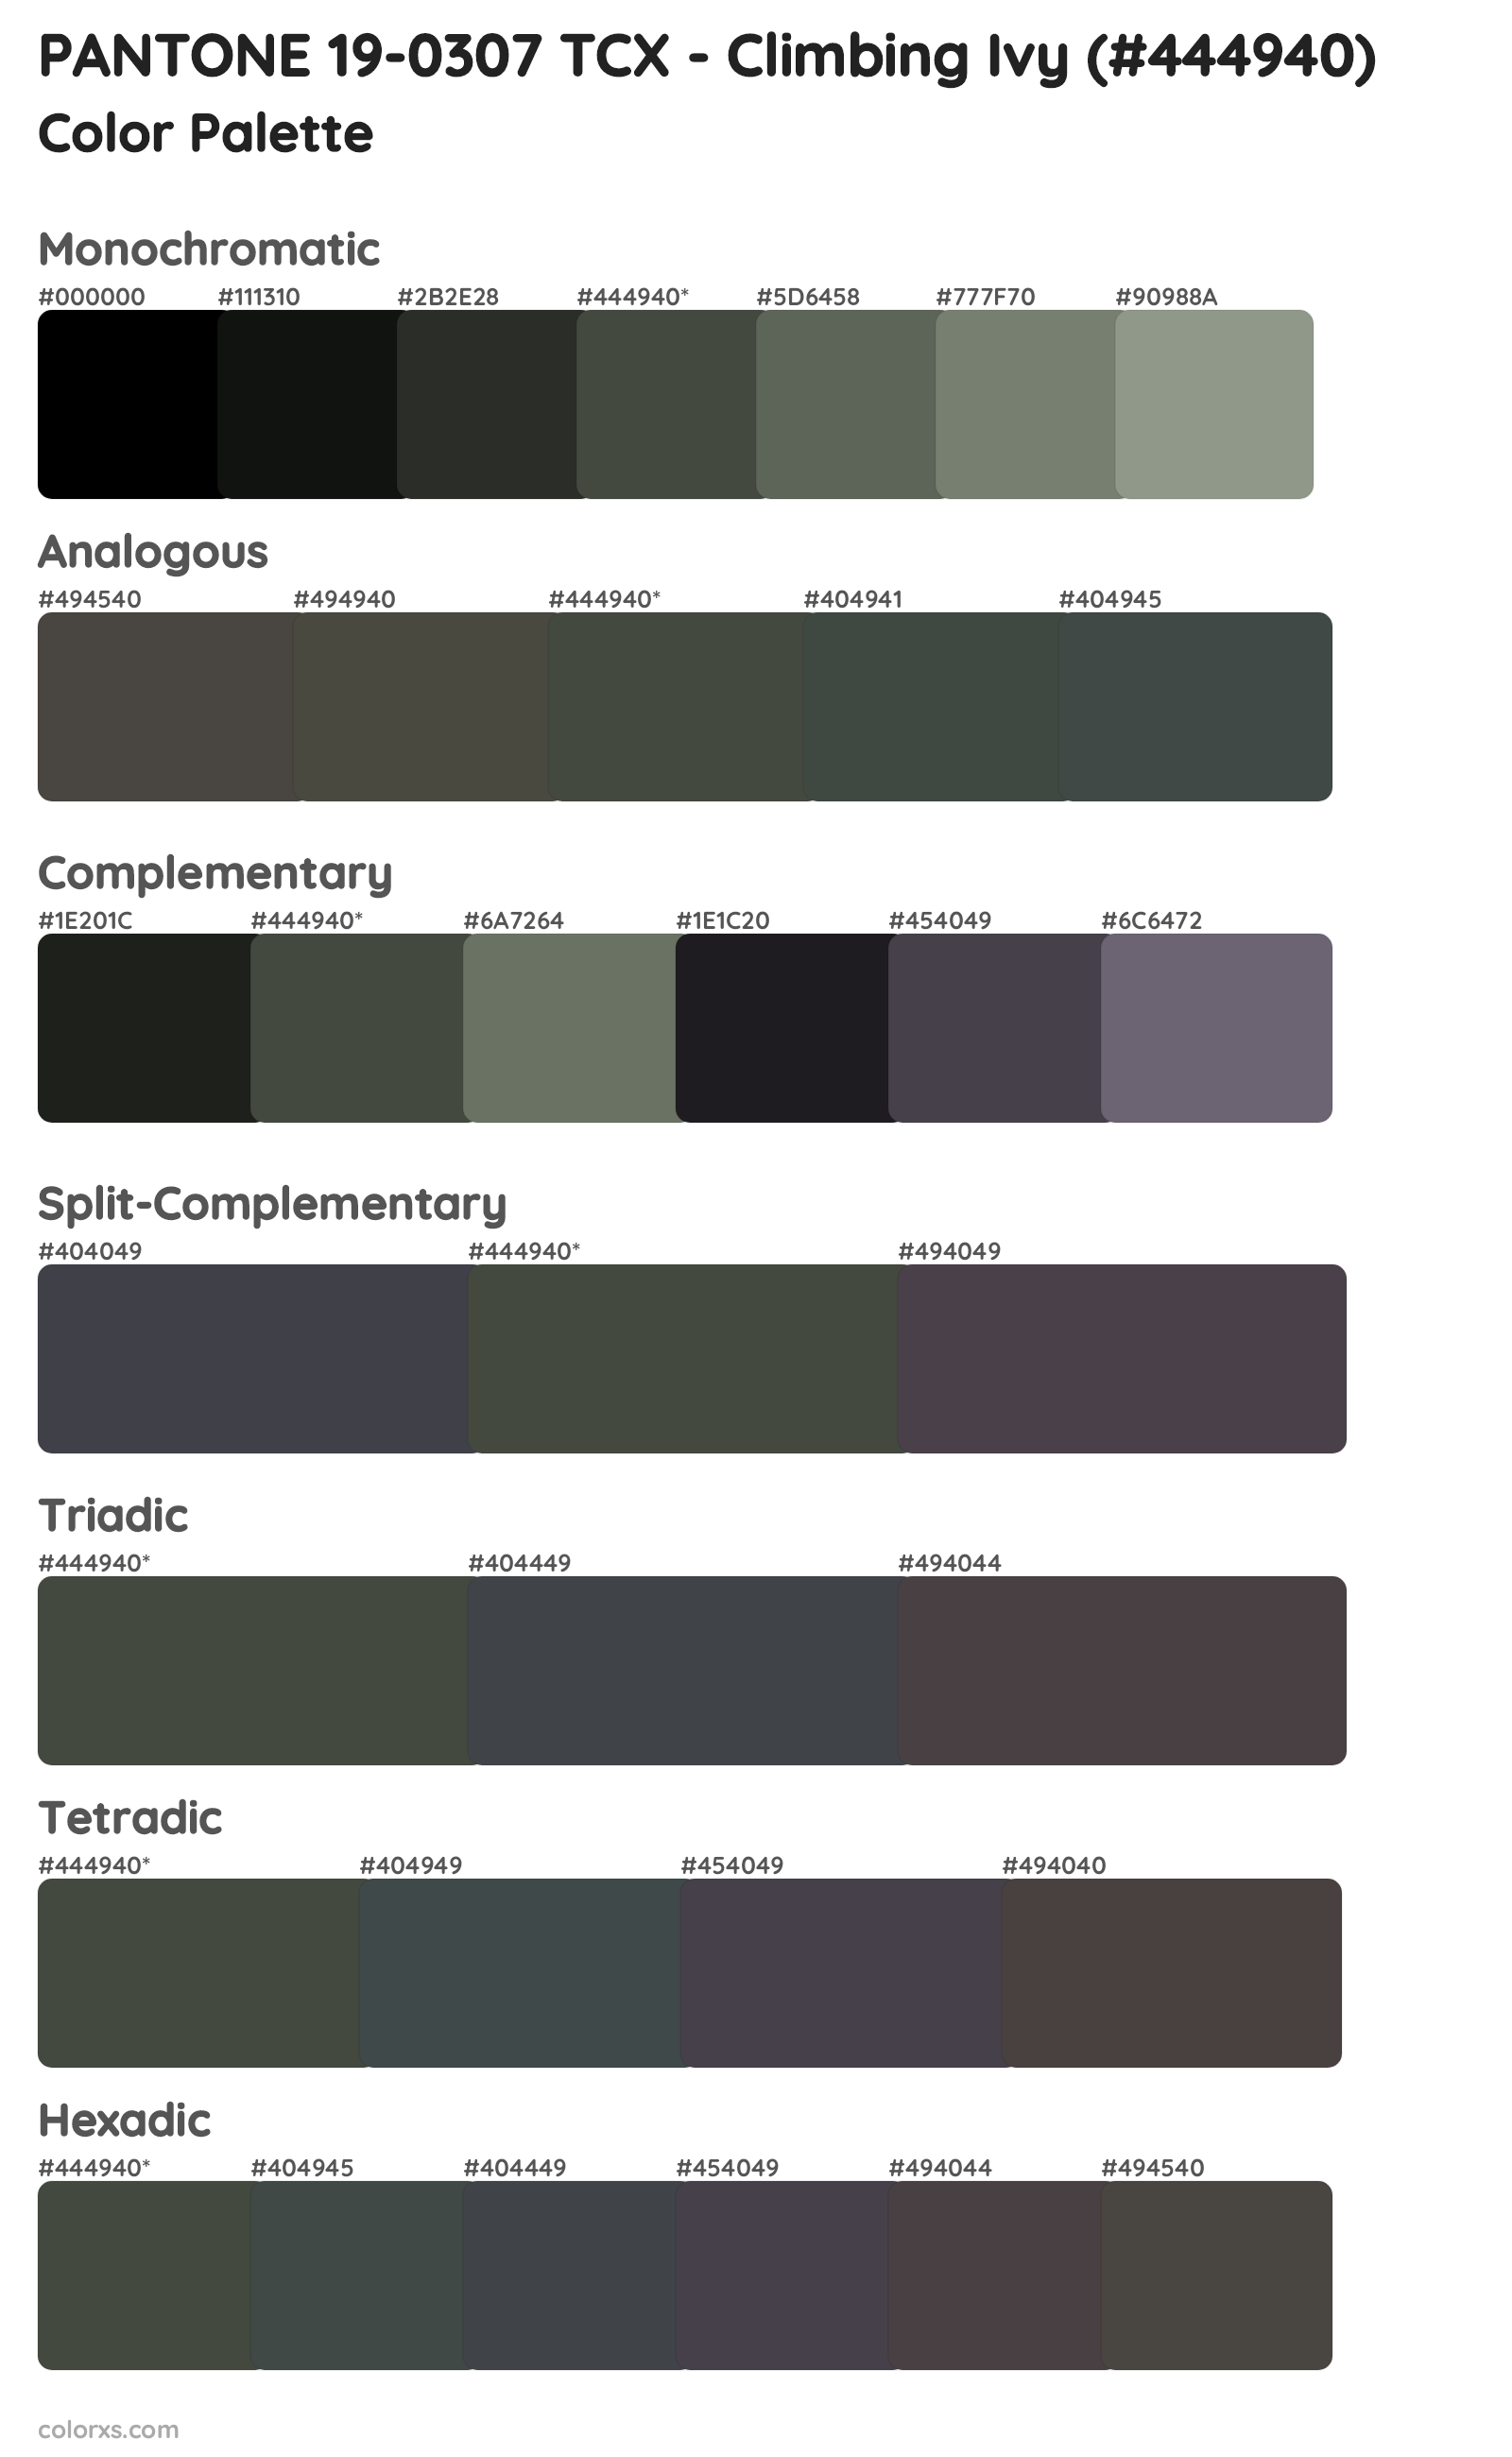 PANTONE 19-0307 TCX - Climbing Ivy Color Scheme Palettes